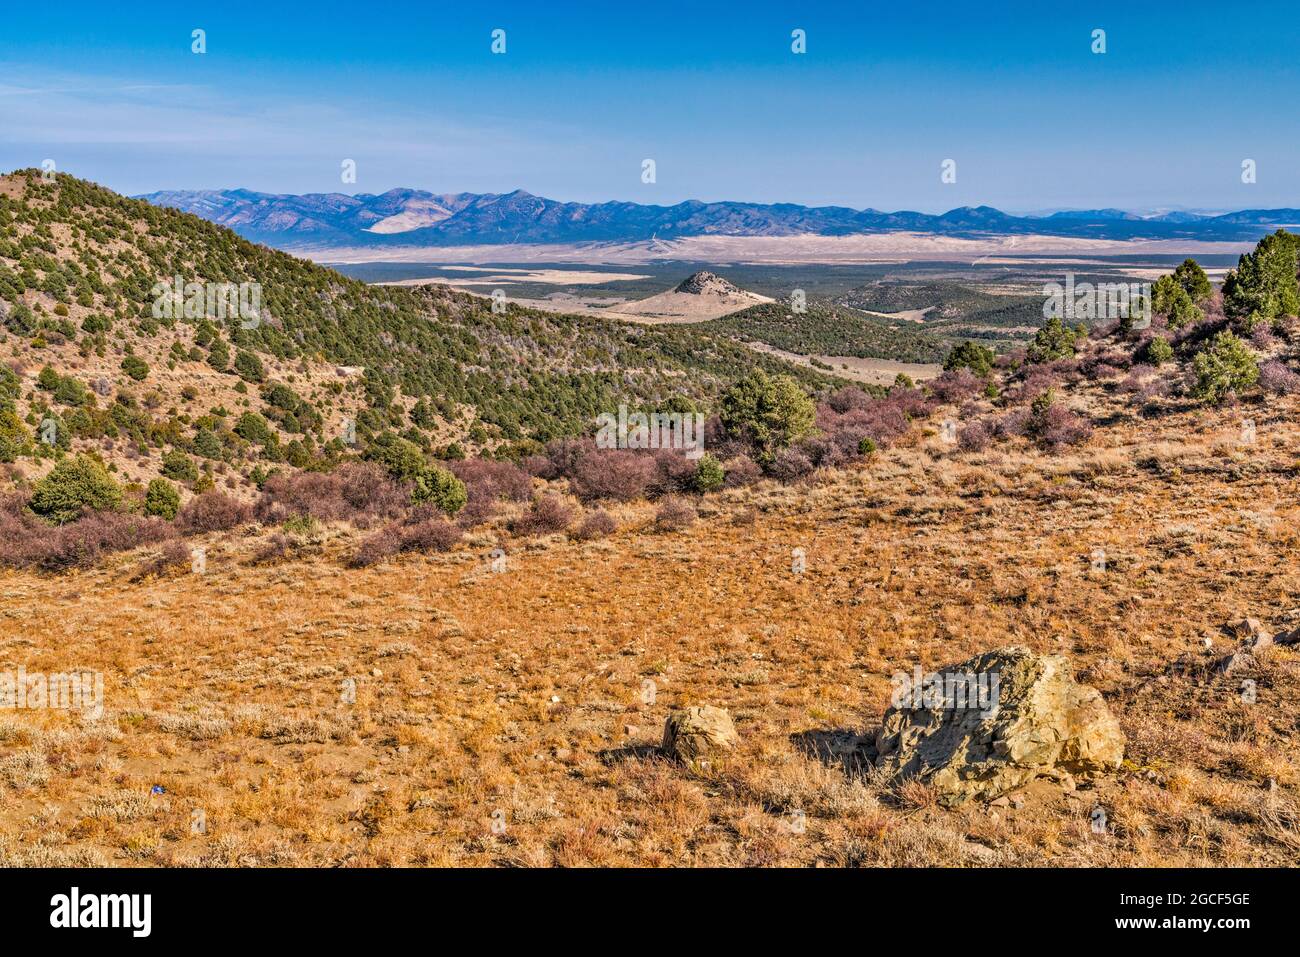 Montañas Wah Wah, vista desde Indian Peak Range, Great Basin Desert, cerca de Modena, Utah, Estados Unidos Foto de stock